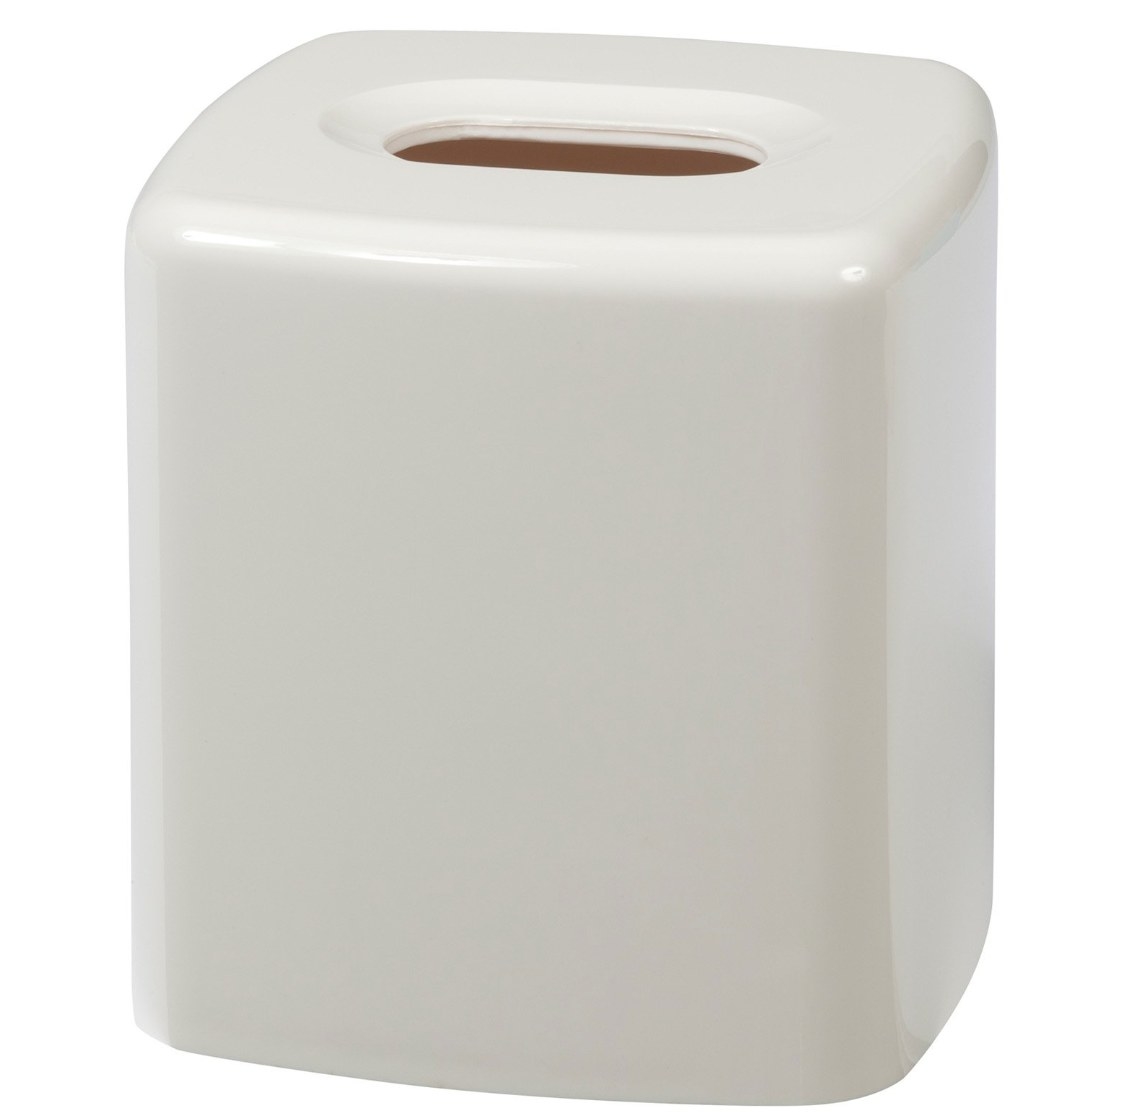 The tissue holder in white